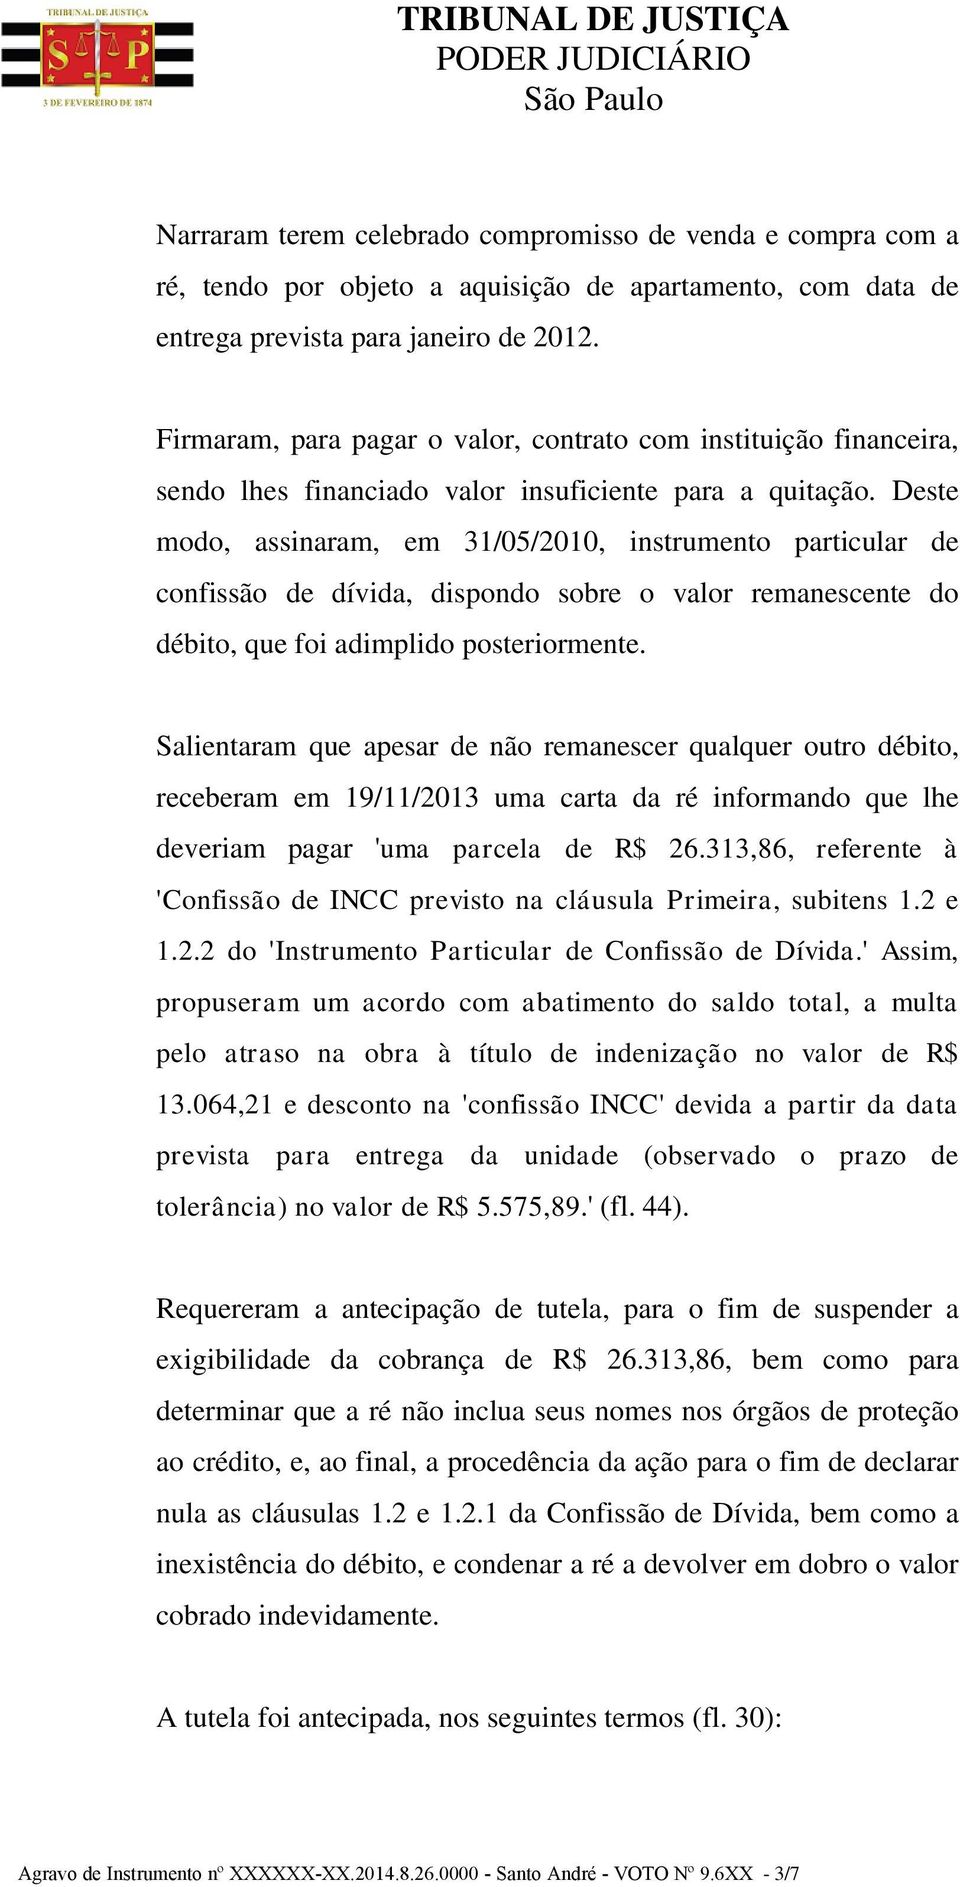 Deste modo, assinaram, em 31/05/2010, instrumento particular de confissão de dívida, dispondo sobre o valor remanescente do débito, que foi adimplido posteriormente.